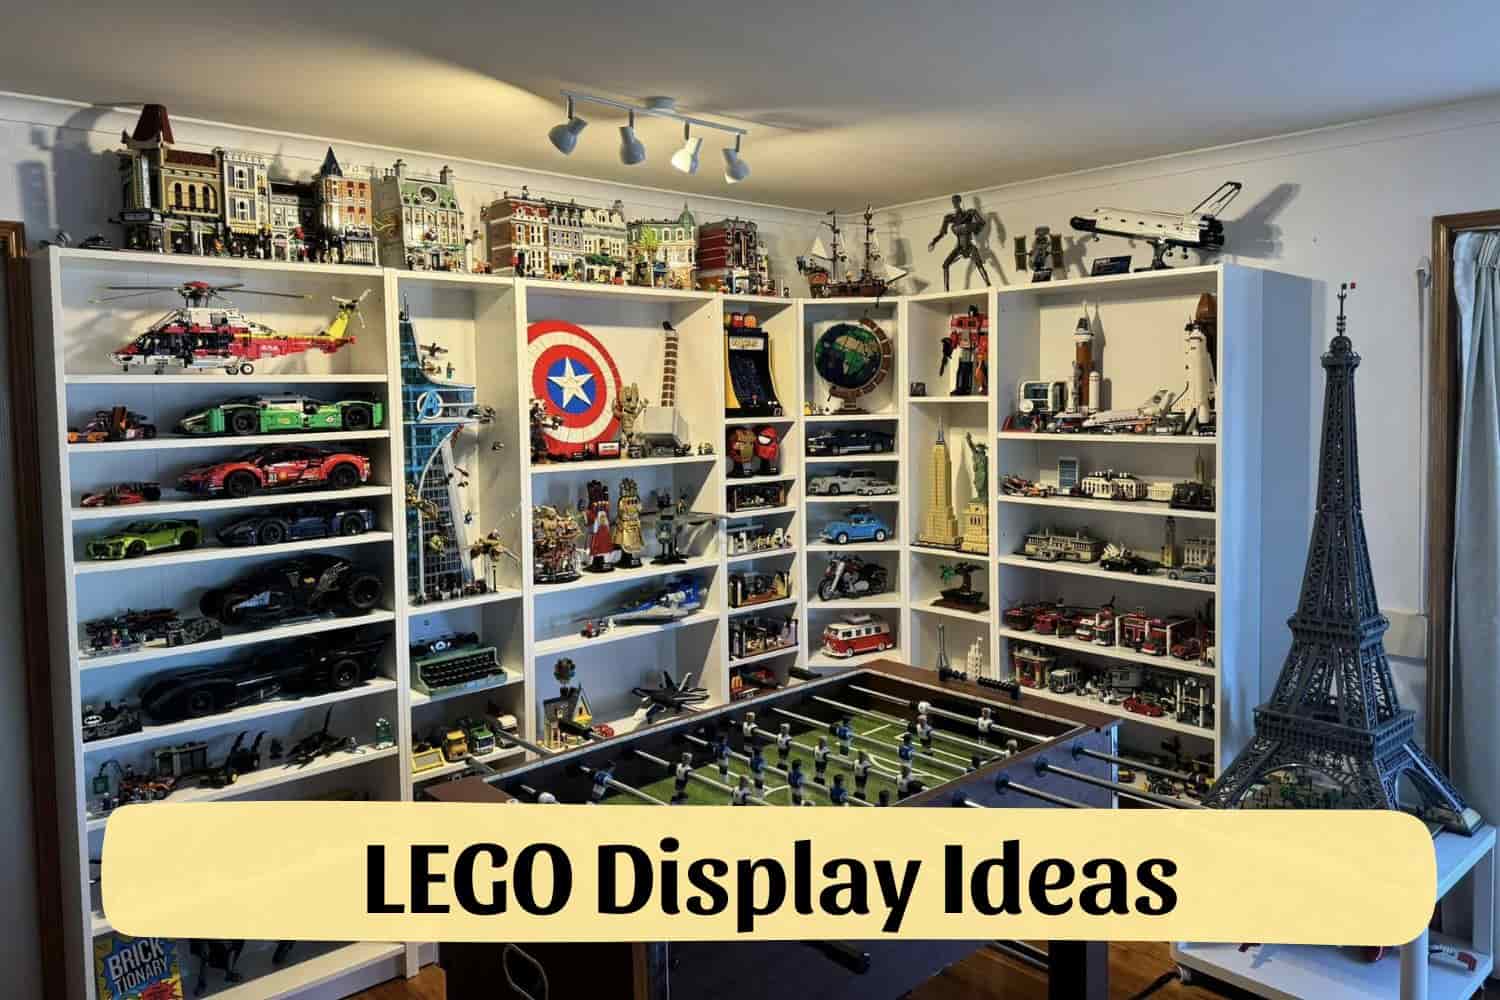 LEGO Display Ideas